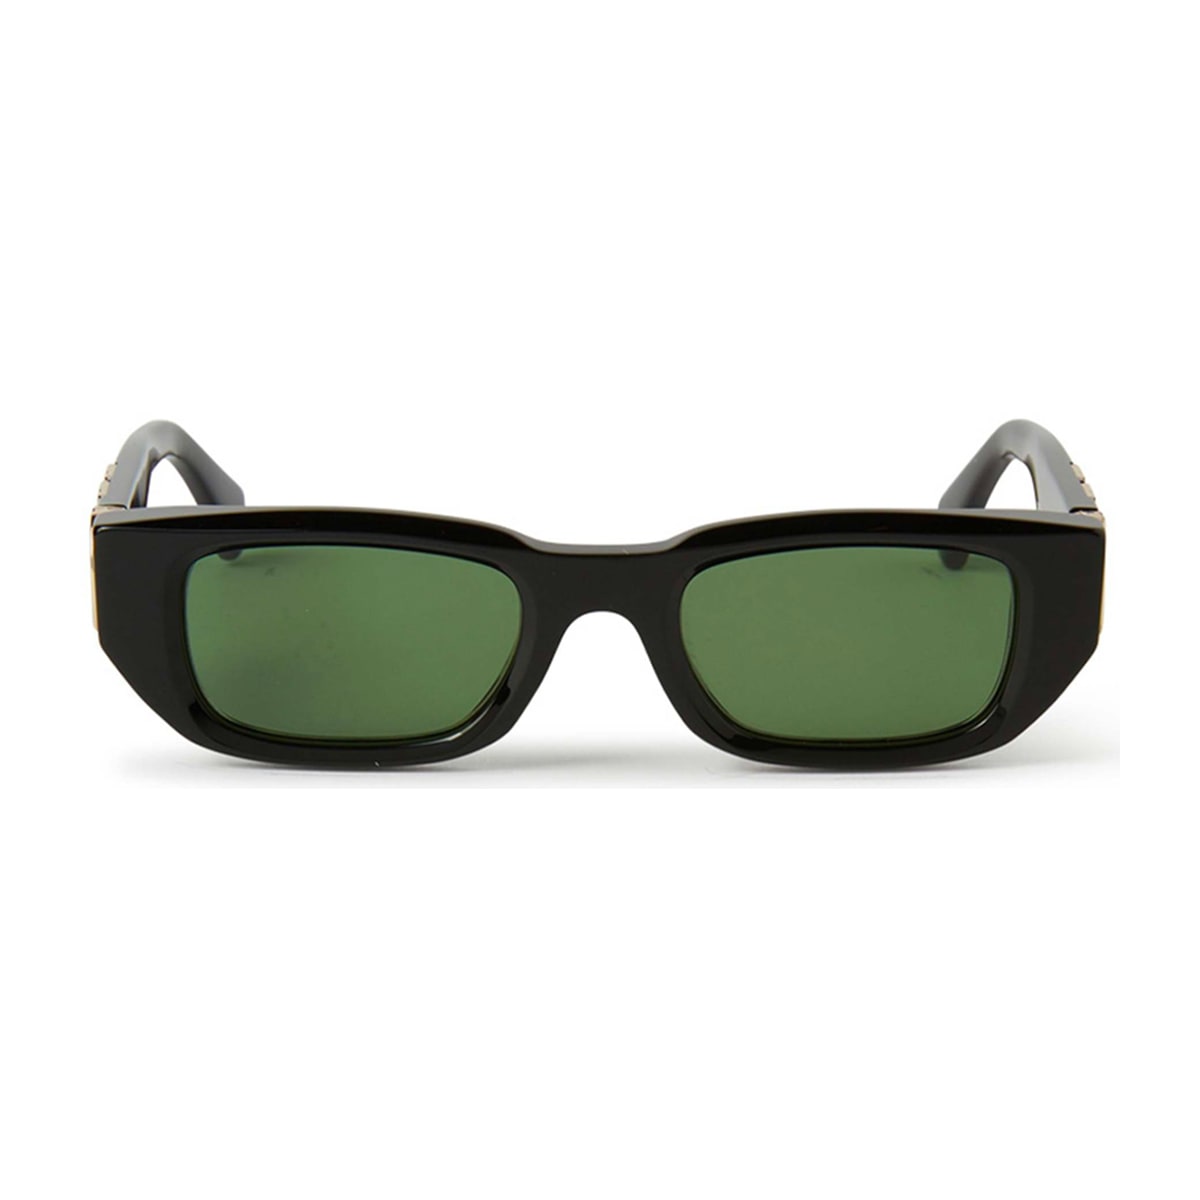 Oeri124 Fillmore 1055 Black Green Sunglasses